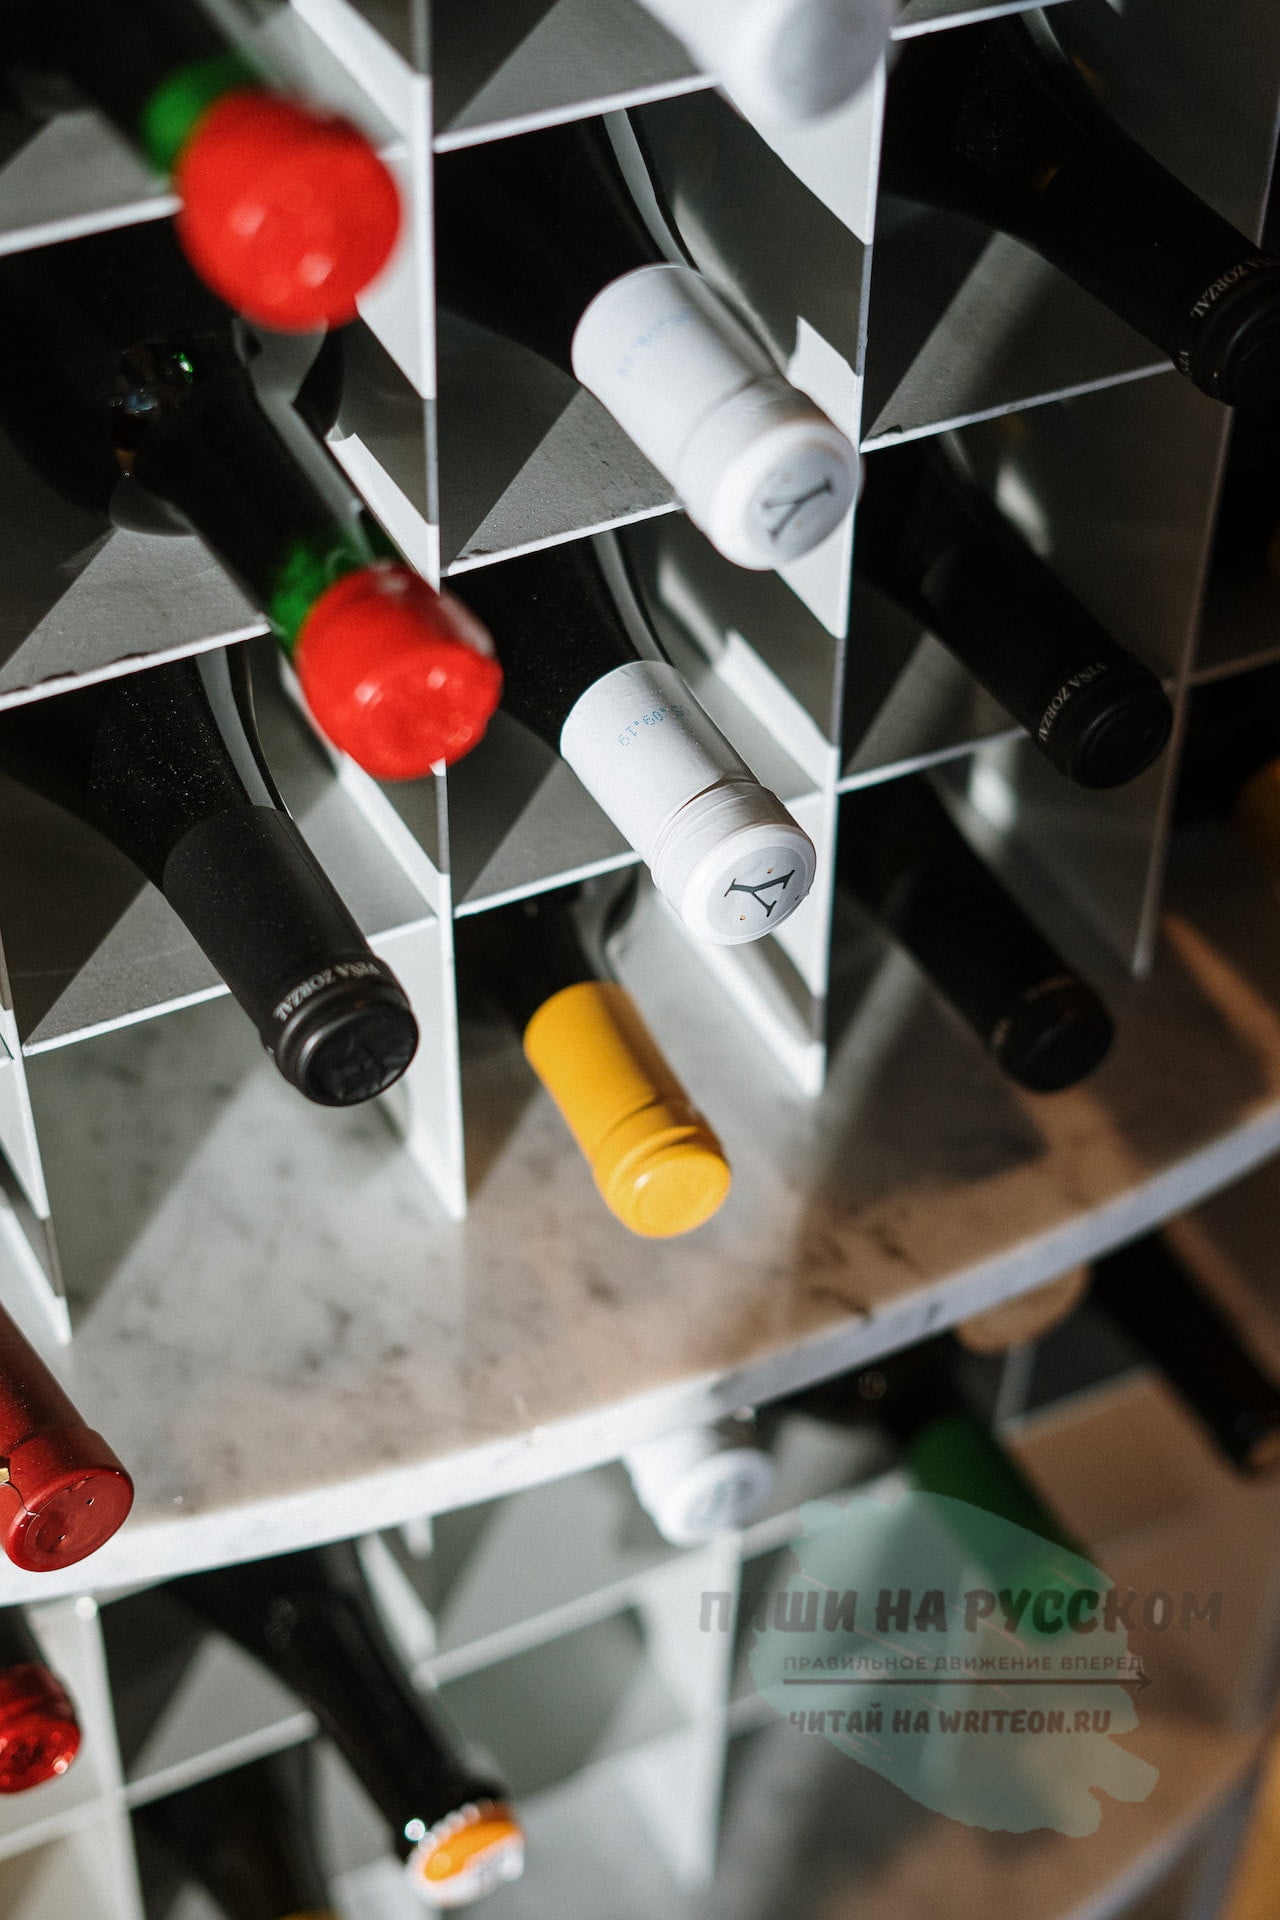 Как правильно пить вино: советы по употреблению различных сортов вина